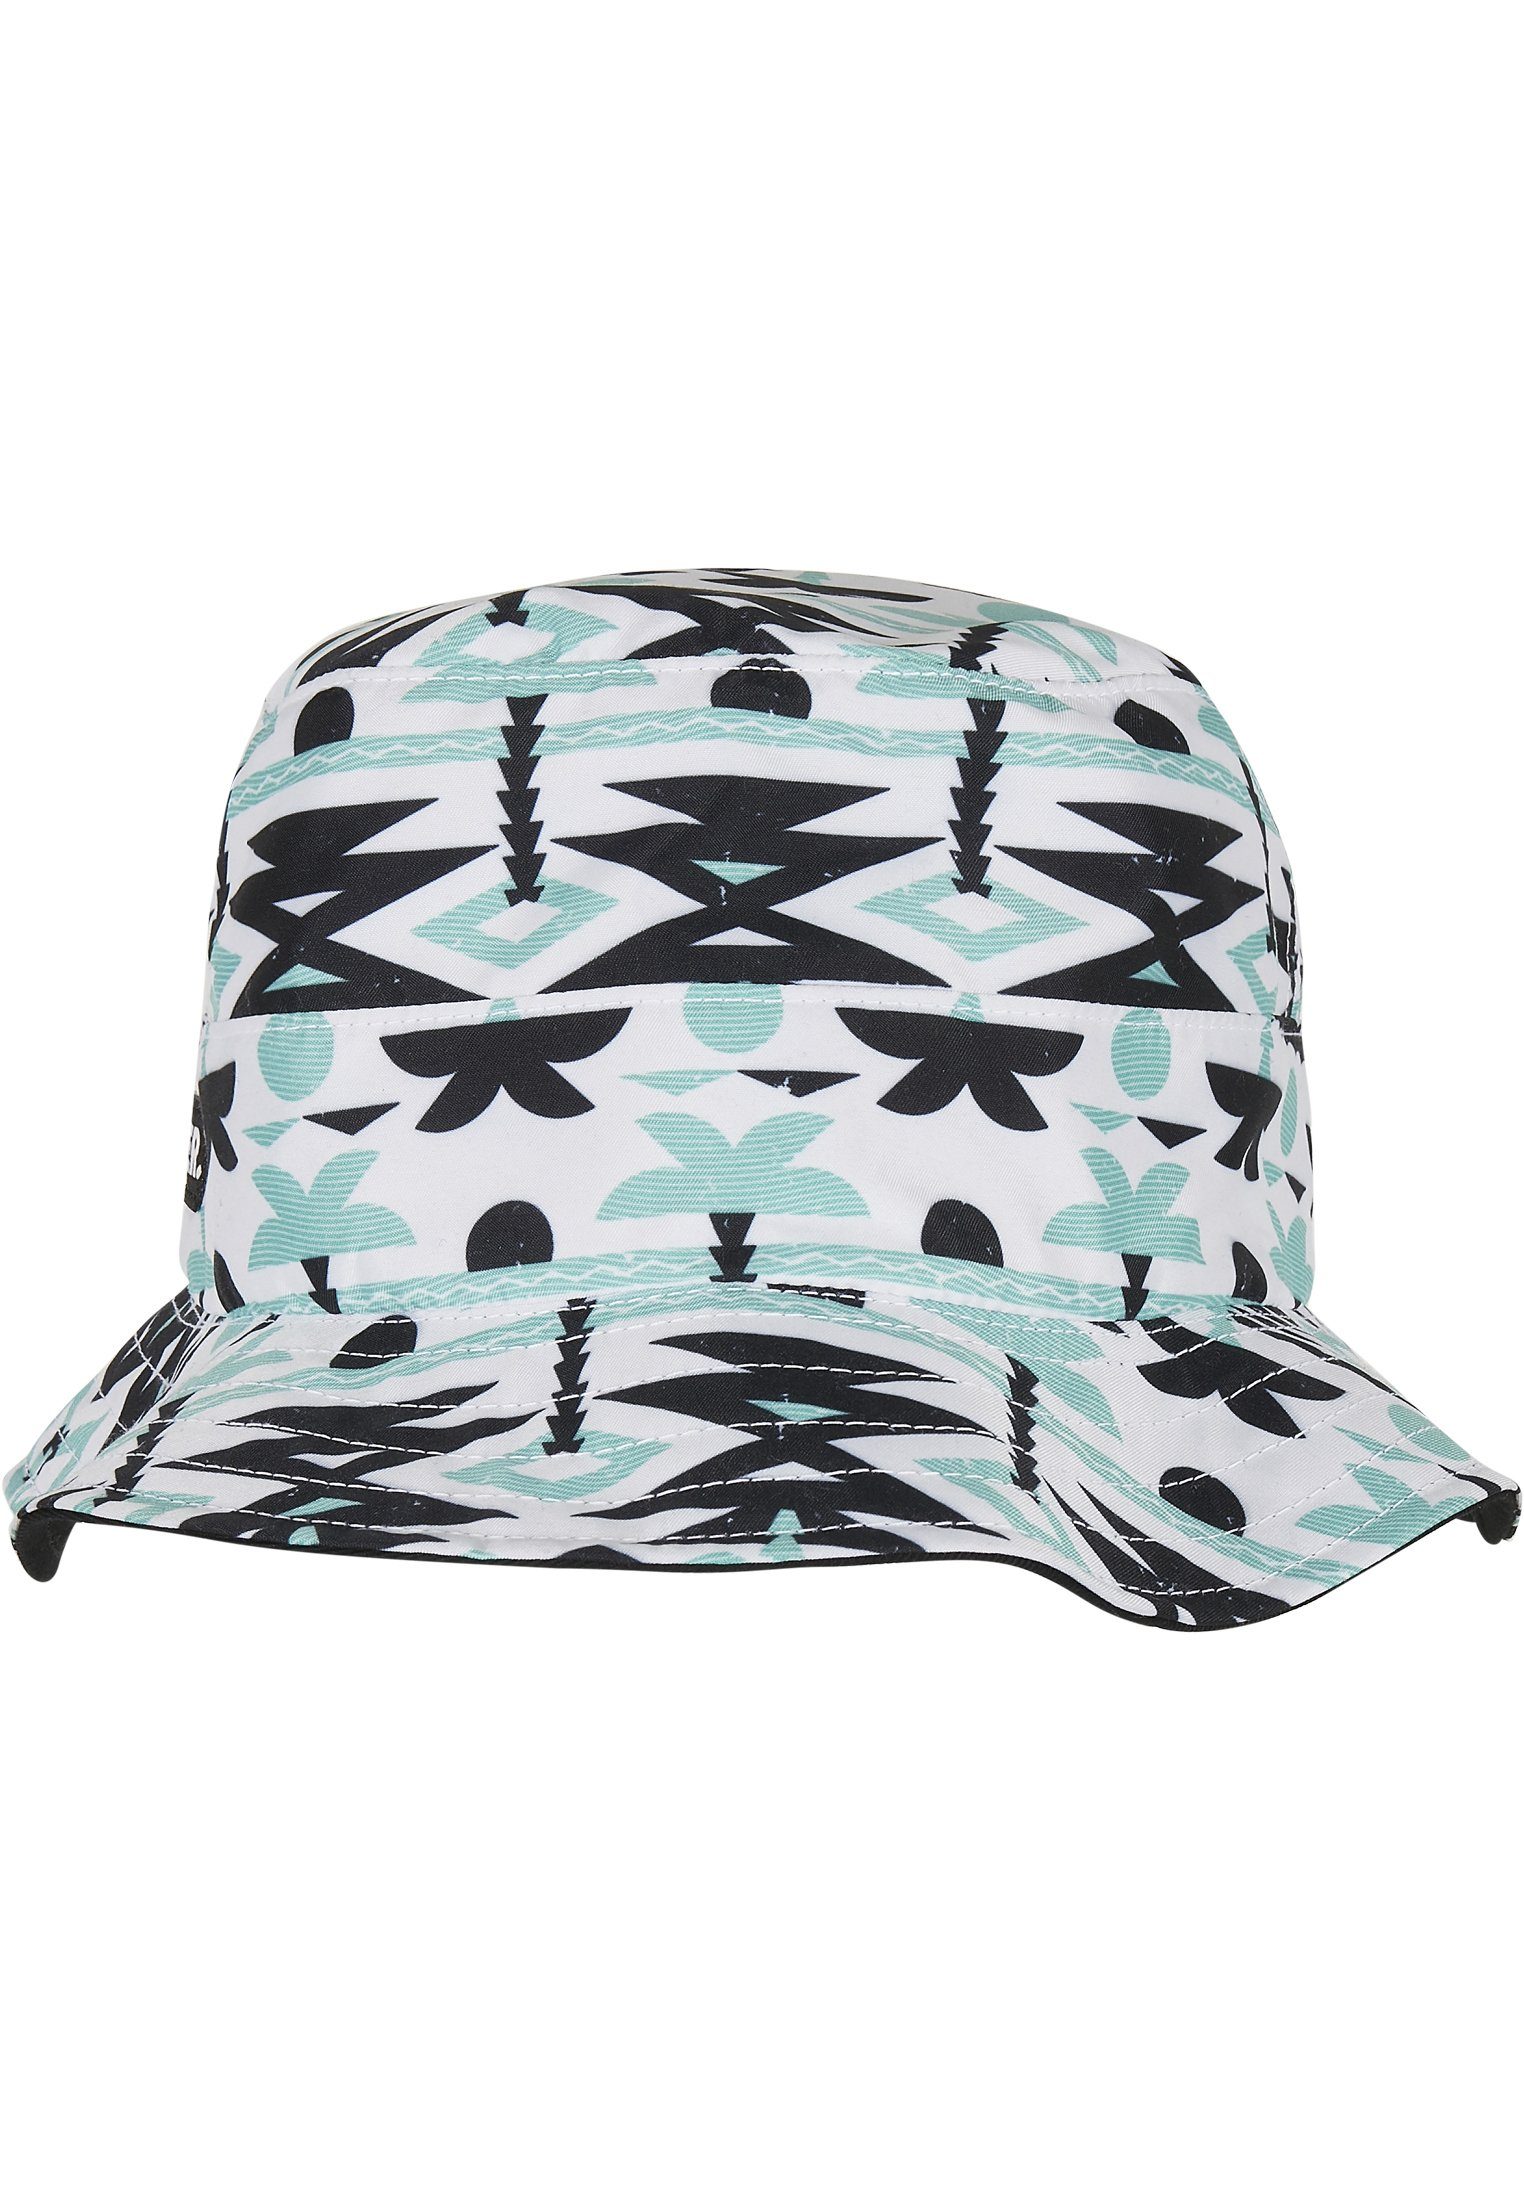 CAYLER & SONS Aztec WL Hat Summer Bucket C&S Reversible Cap Flex